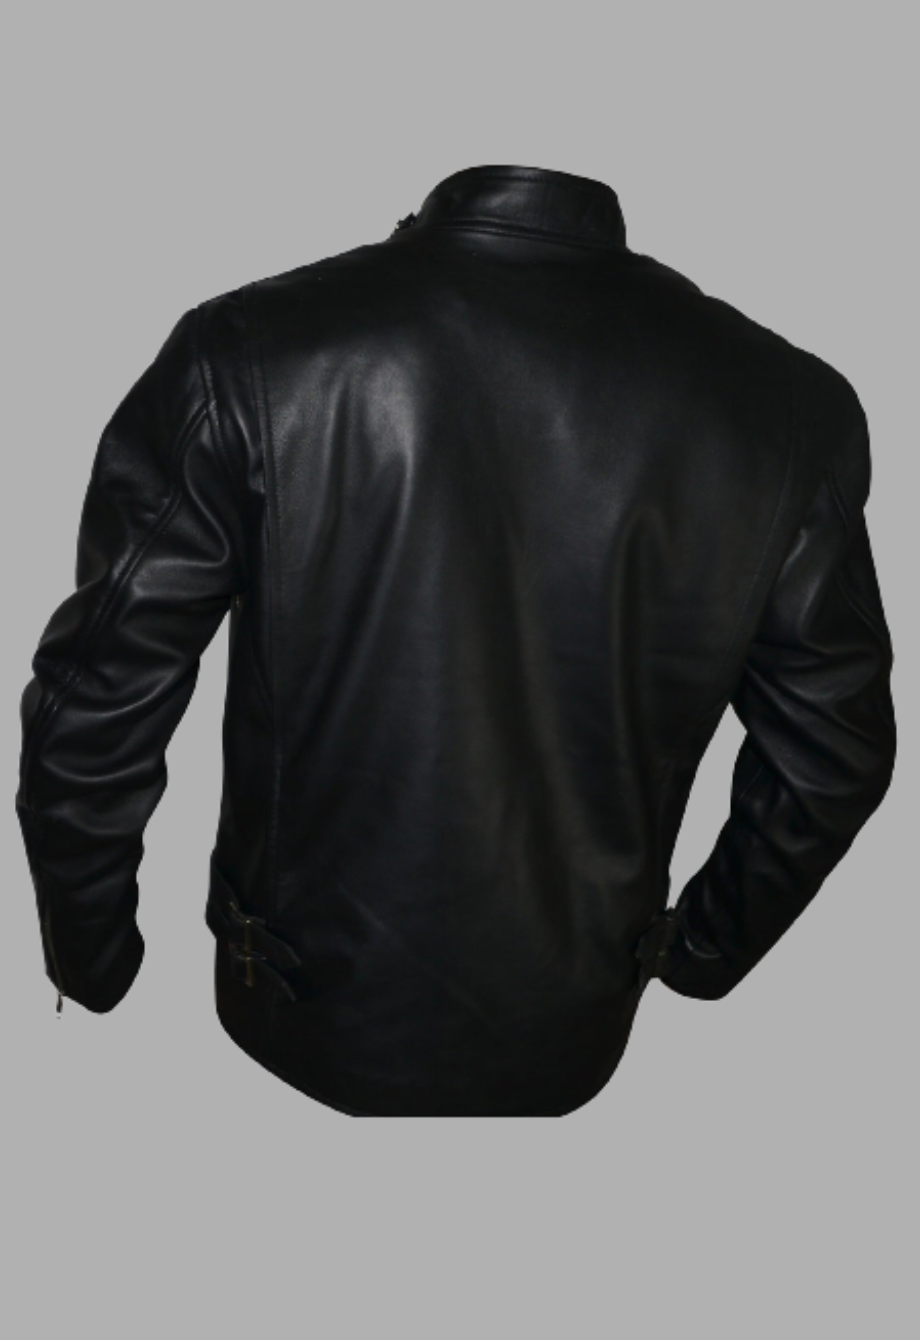 Men Designer Shoulder Padded Motorcycle Racer Leather Jacket